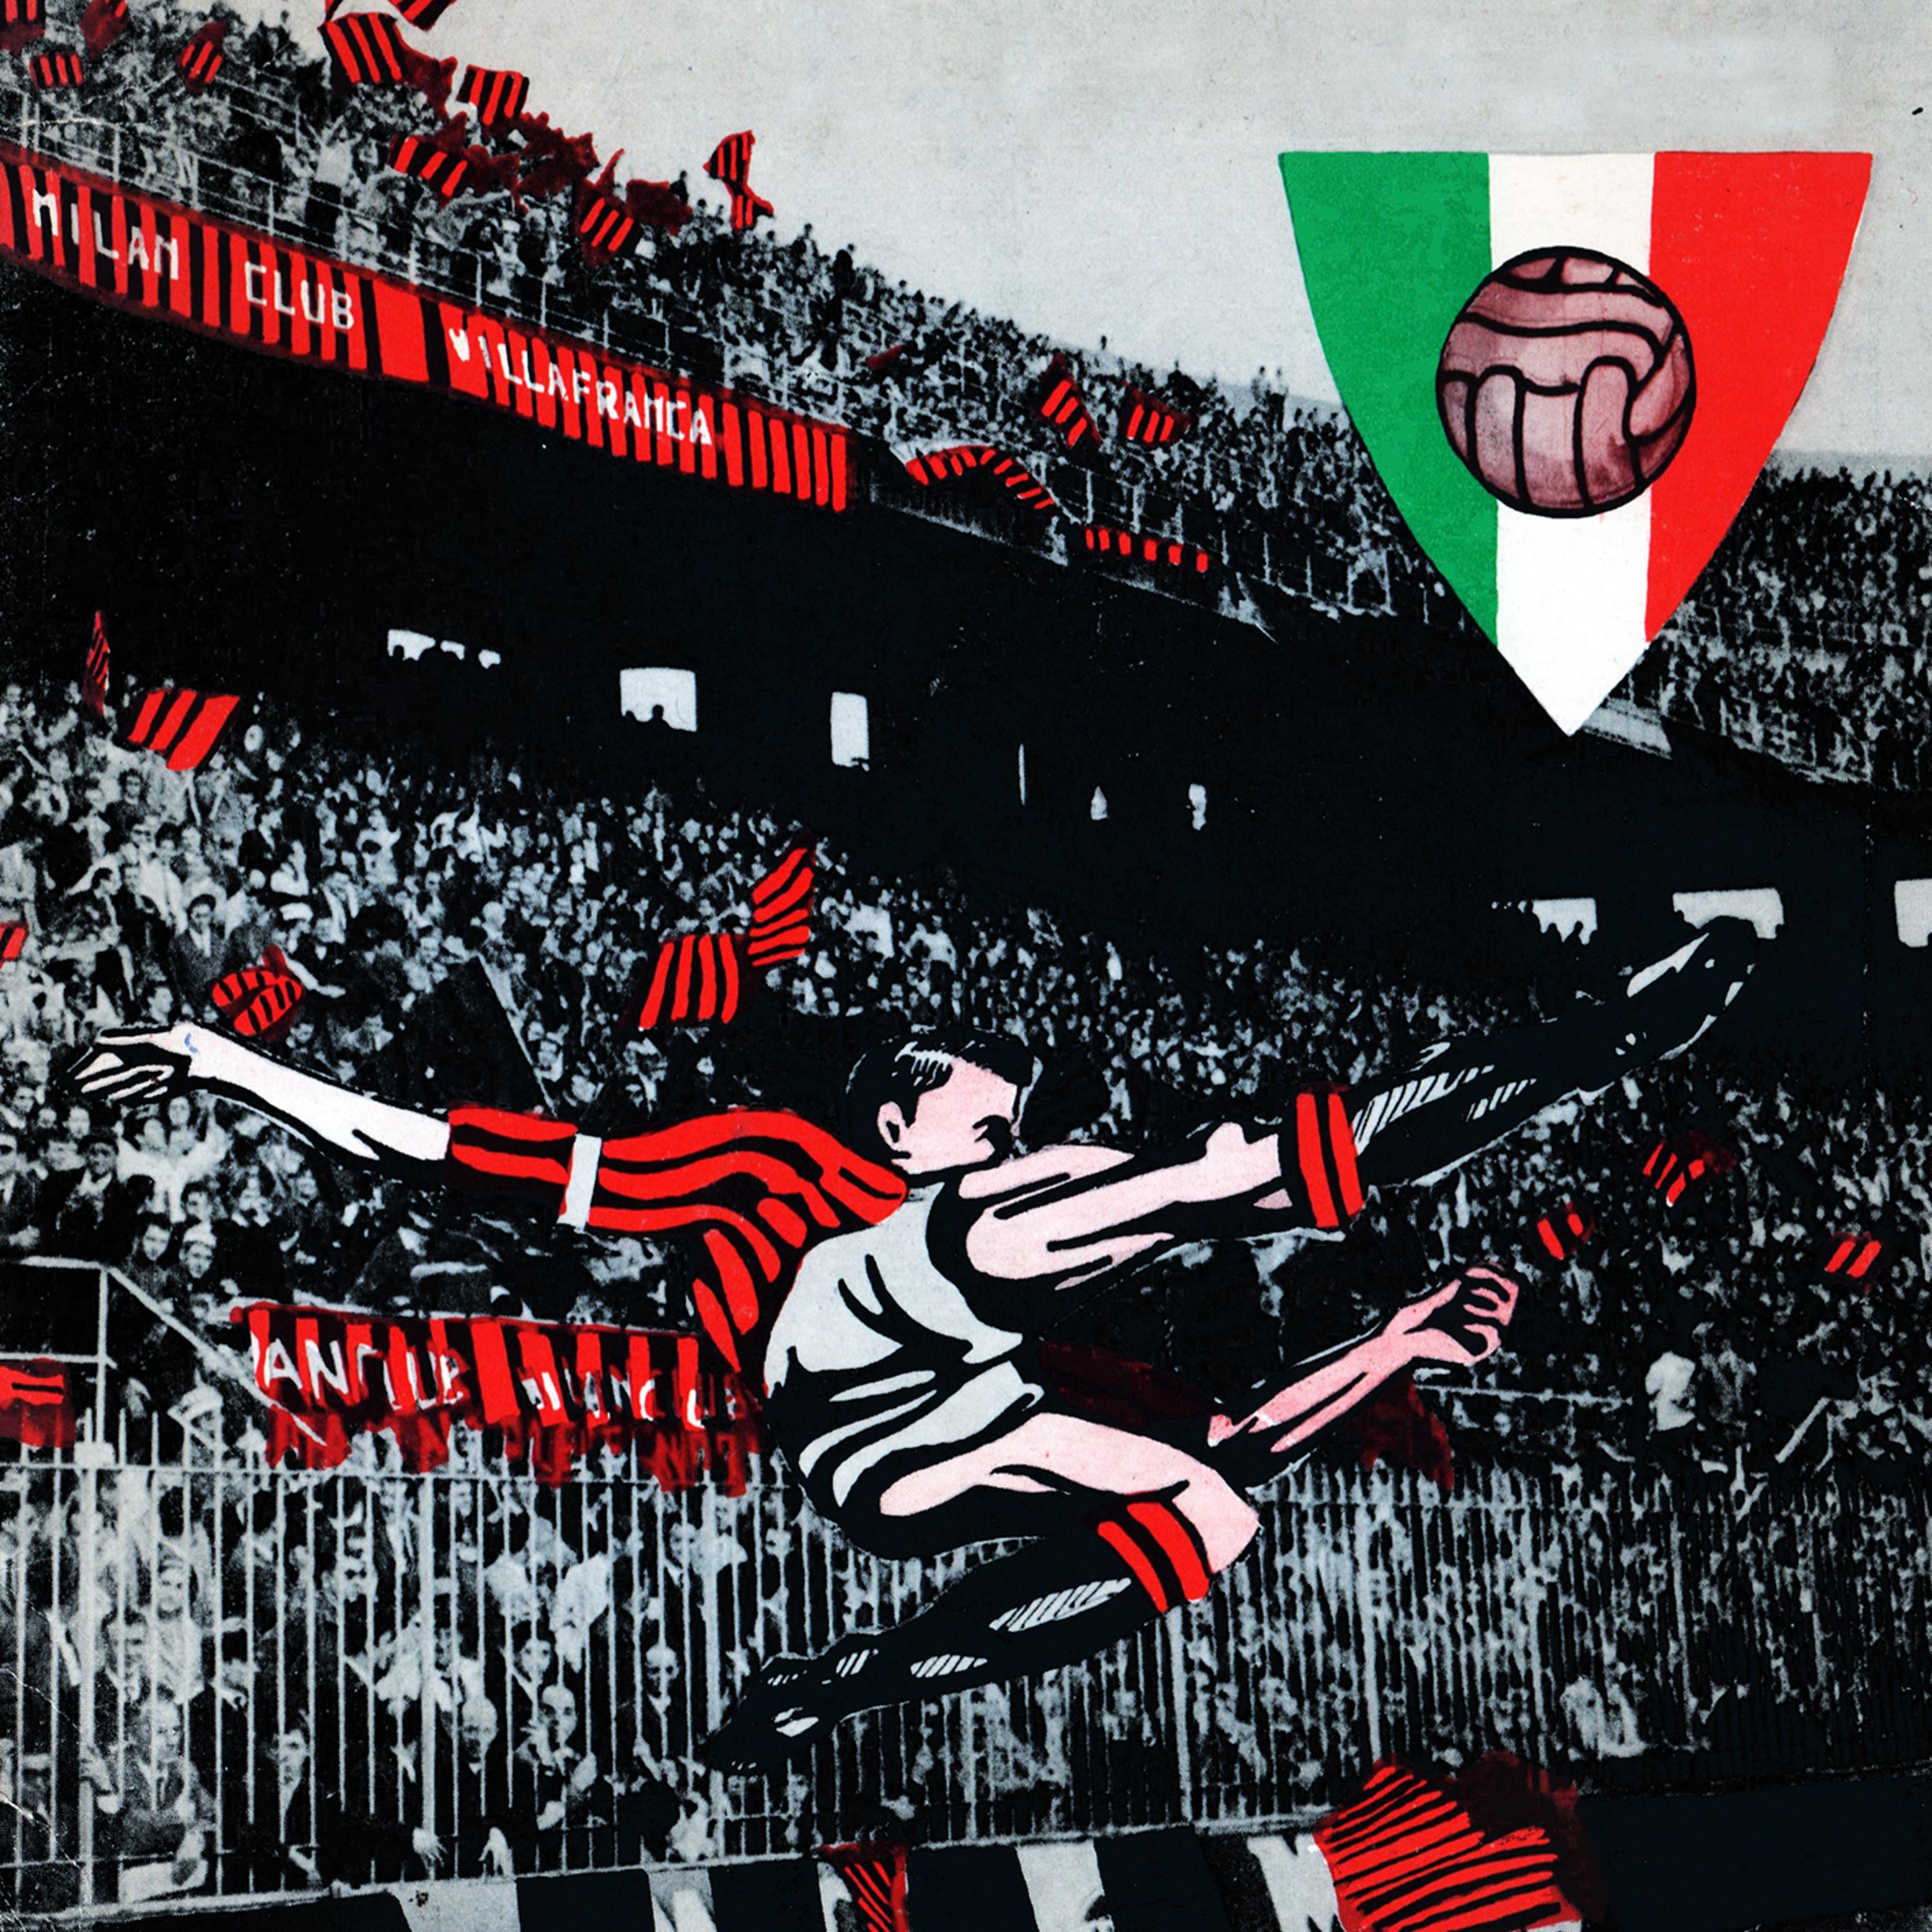 Milan! Milan!